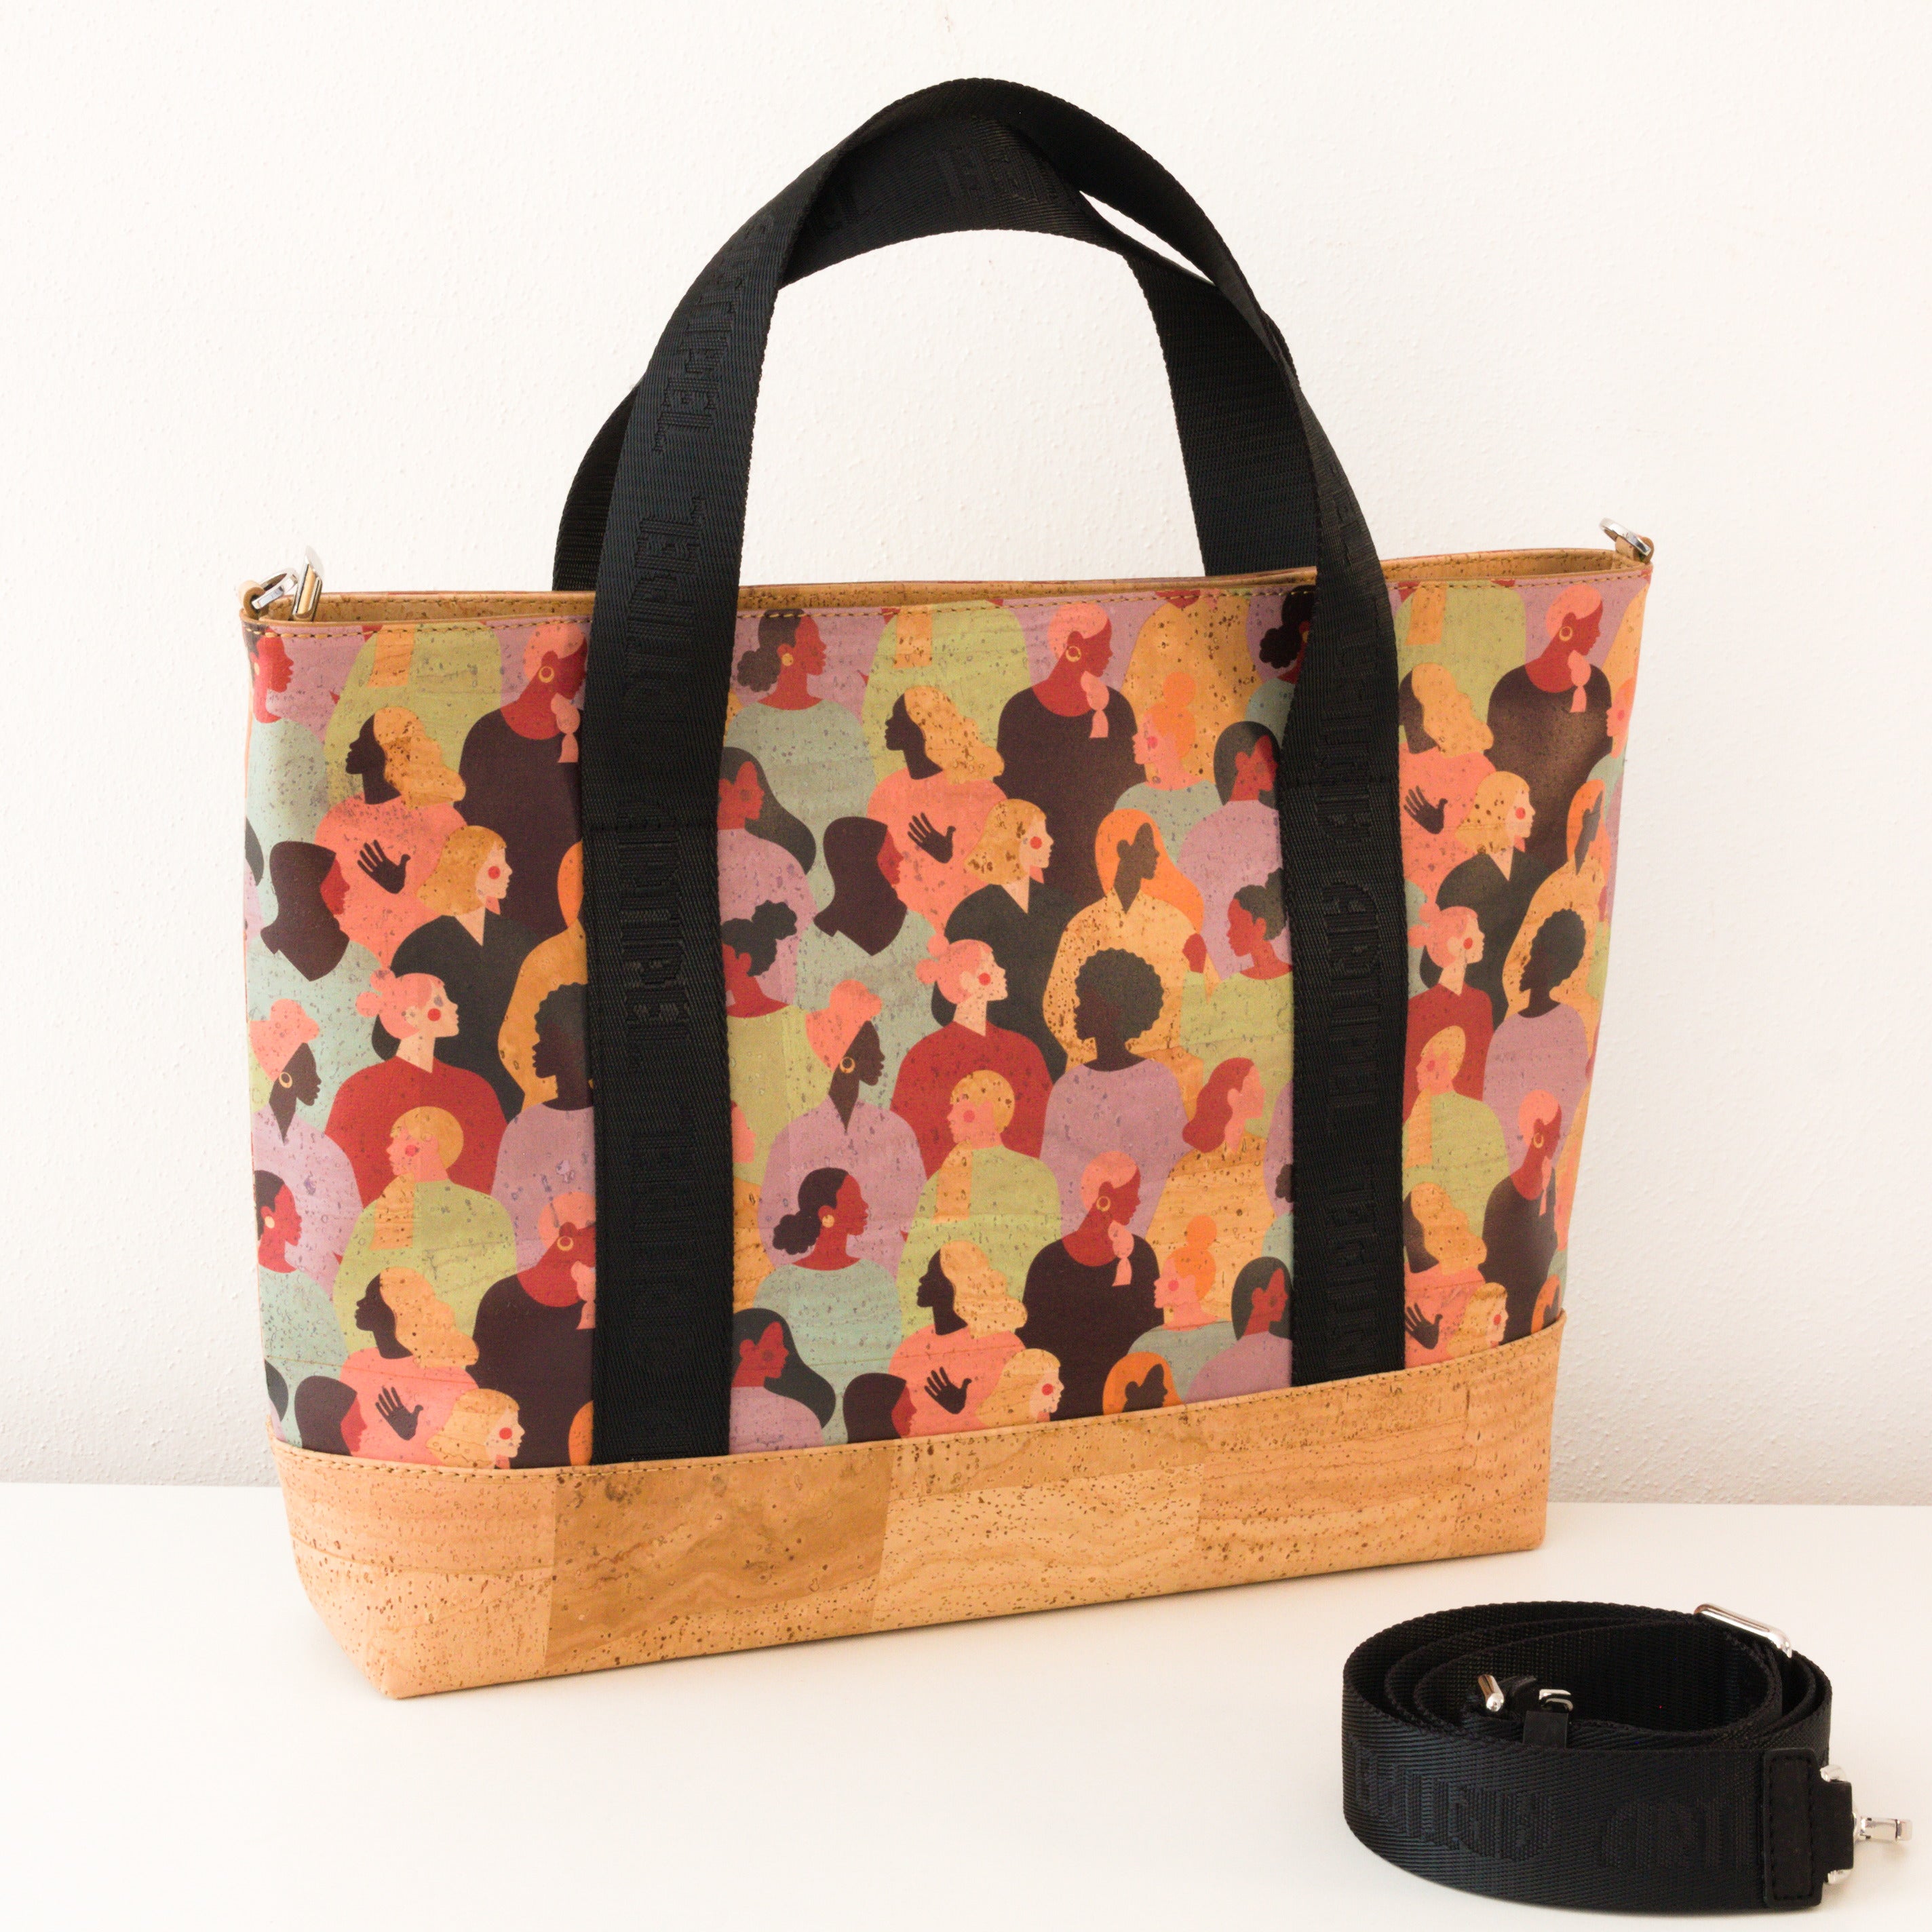 Kork Handtasche * in 2 Größen und 2 Designs * Vegan * Umhängetasche für Frauen * Crossbody * Shopper * handmade in Portugal